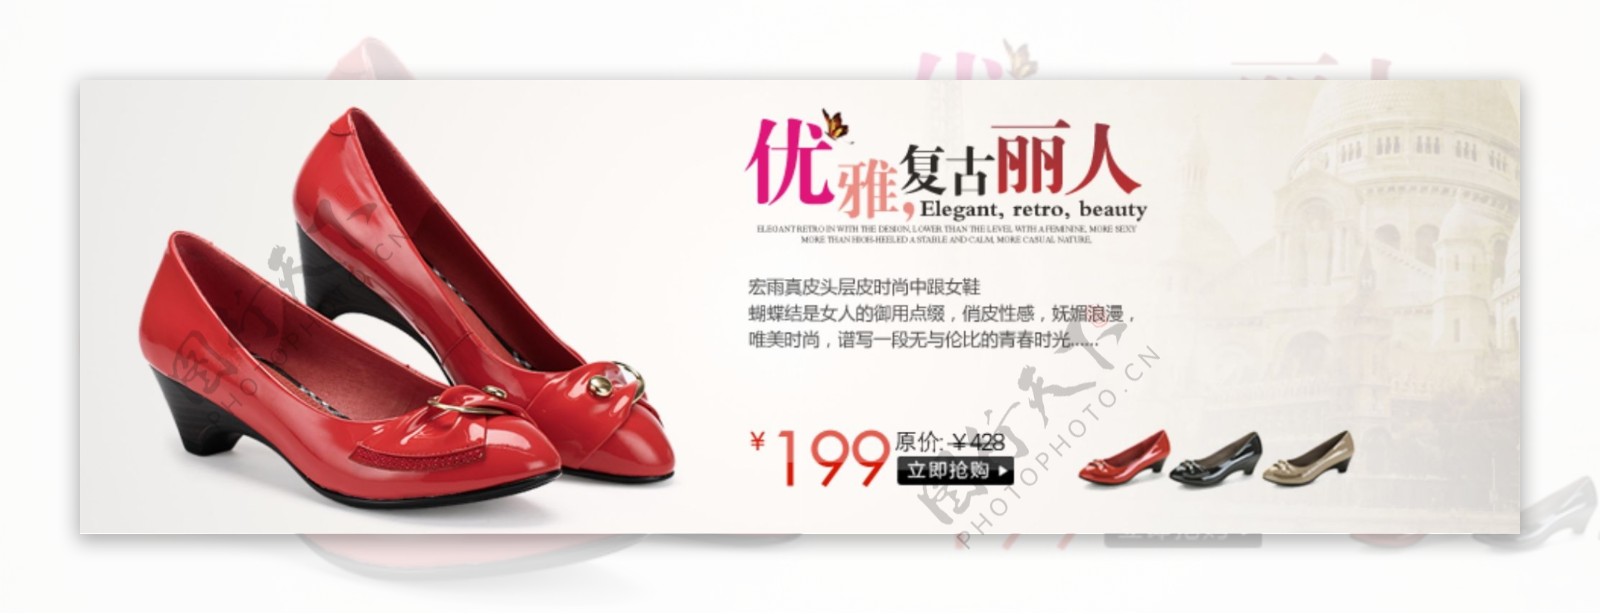 女鞋网页广告